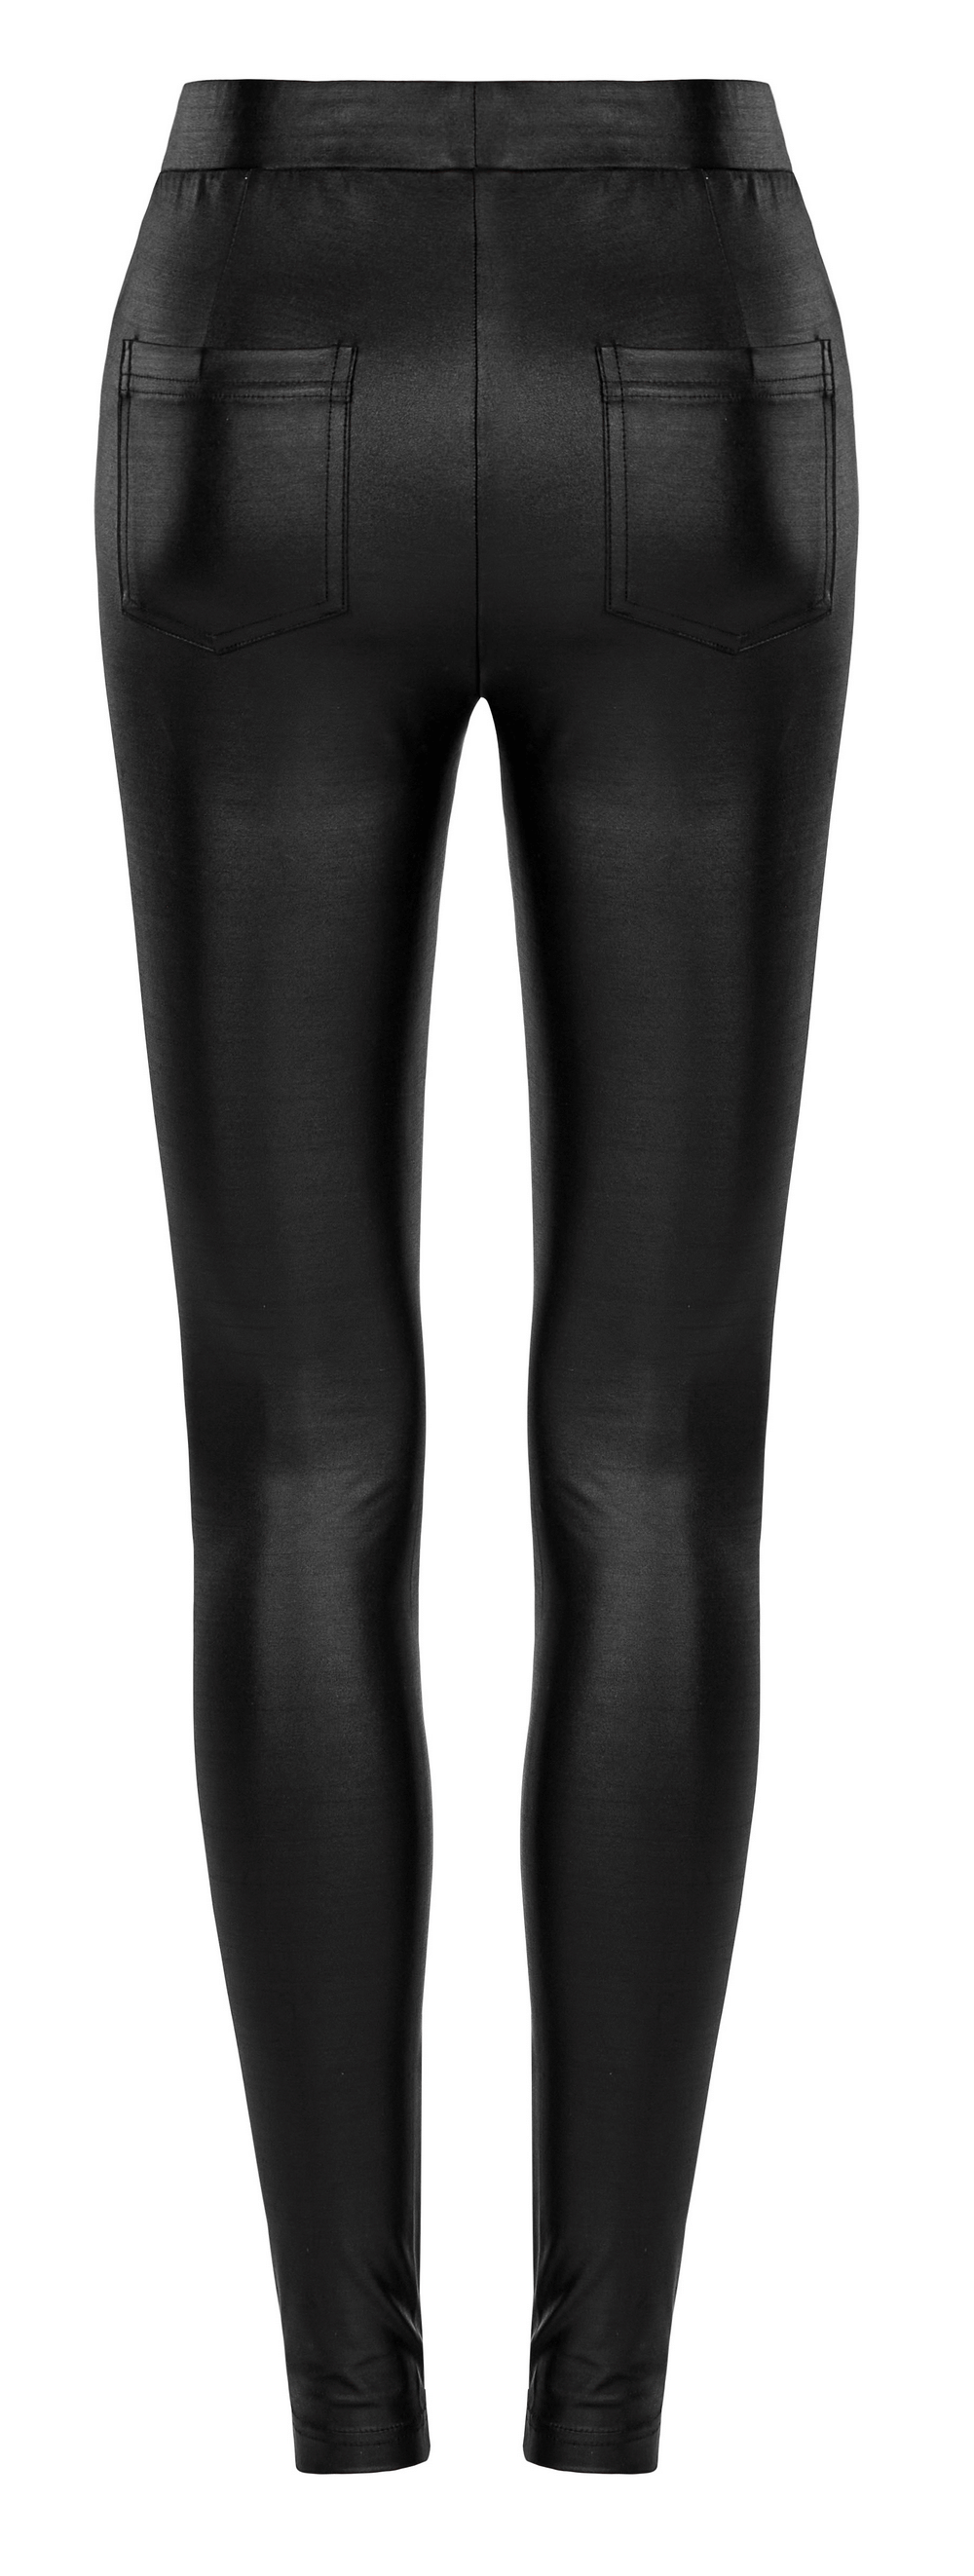 Elegant Lace Applique Black Faux Leather Leggings - HARD'N'HEAVY